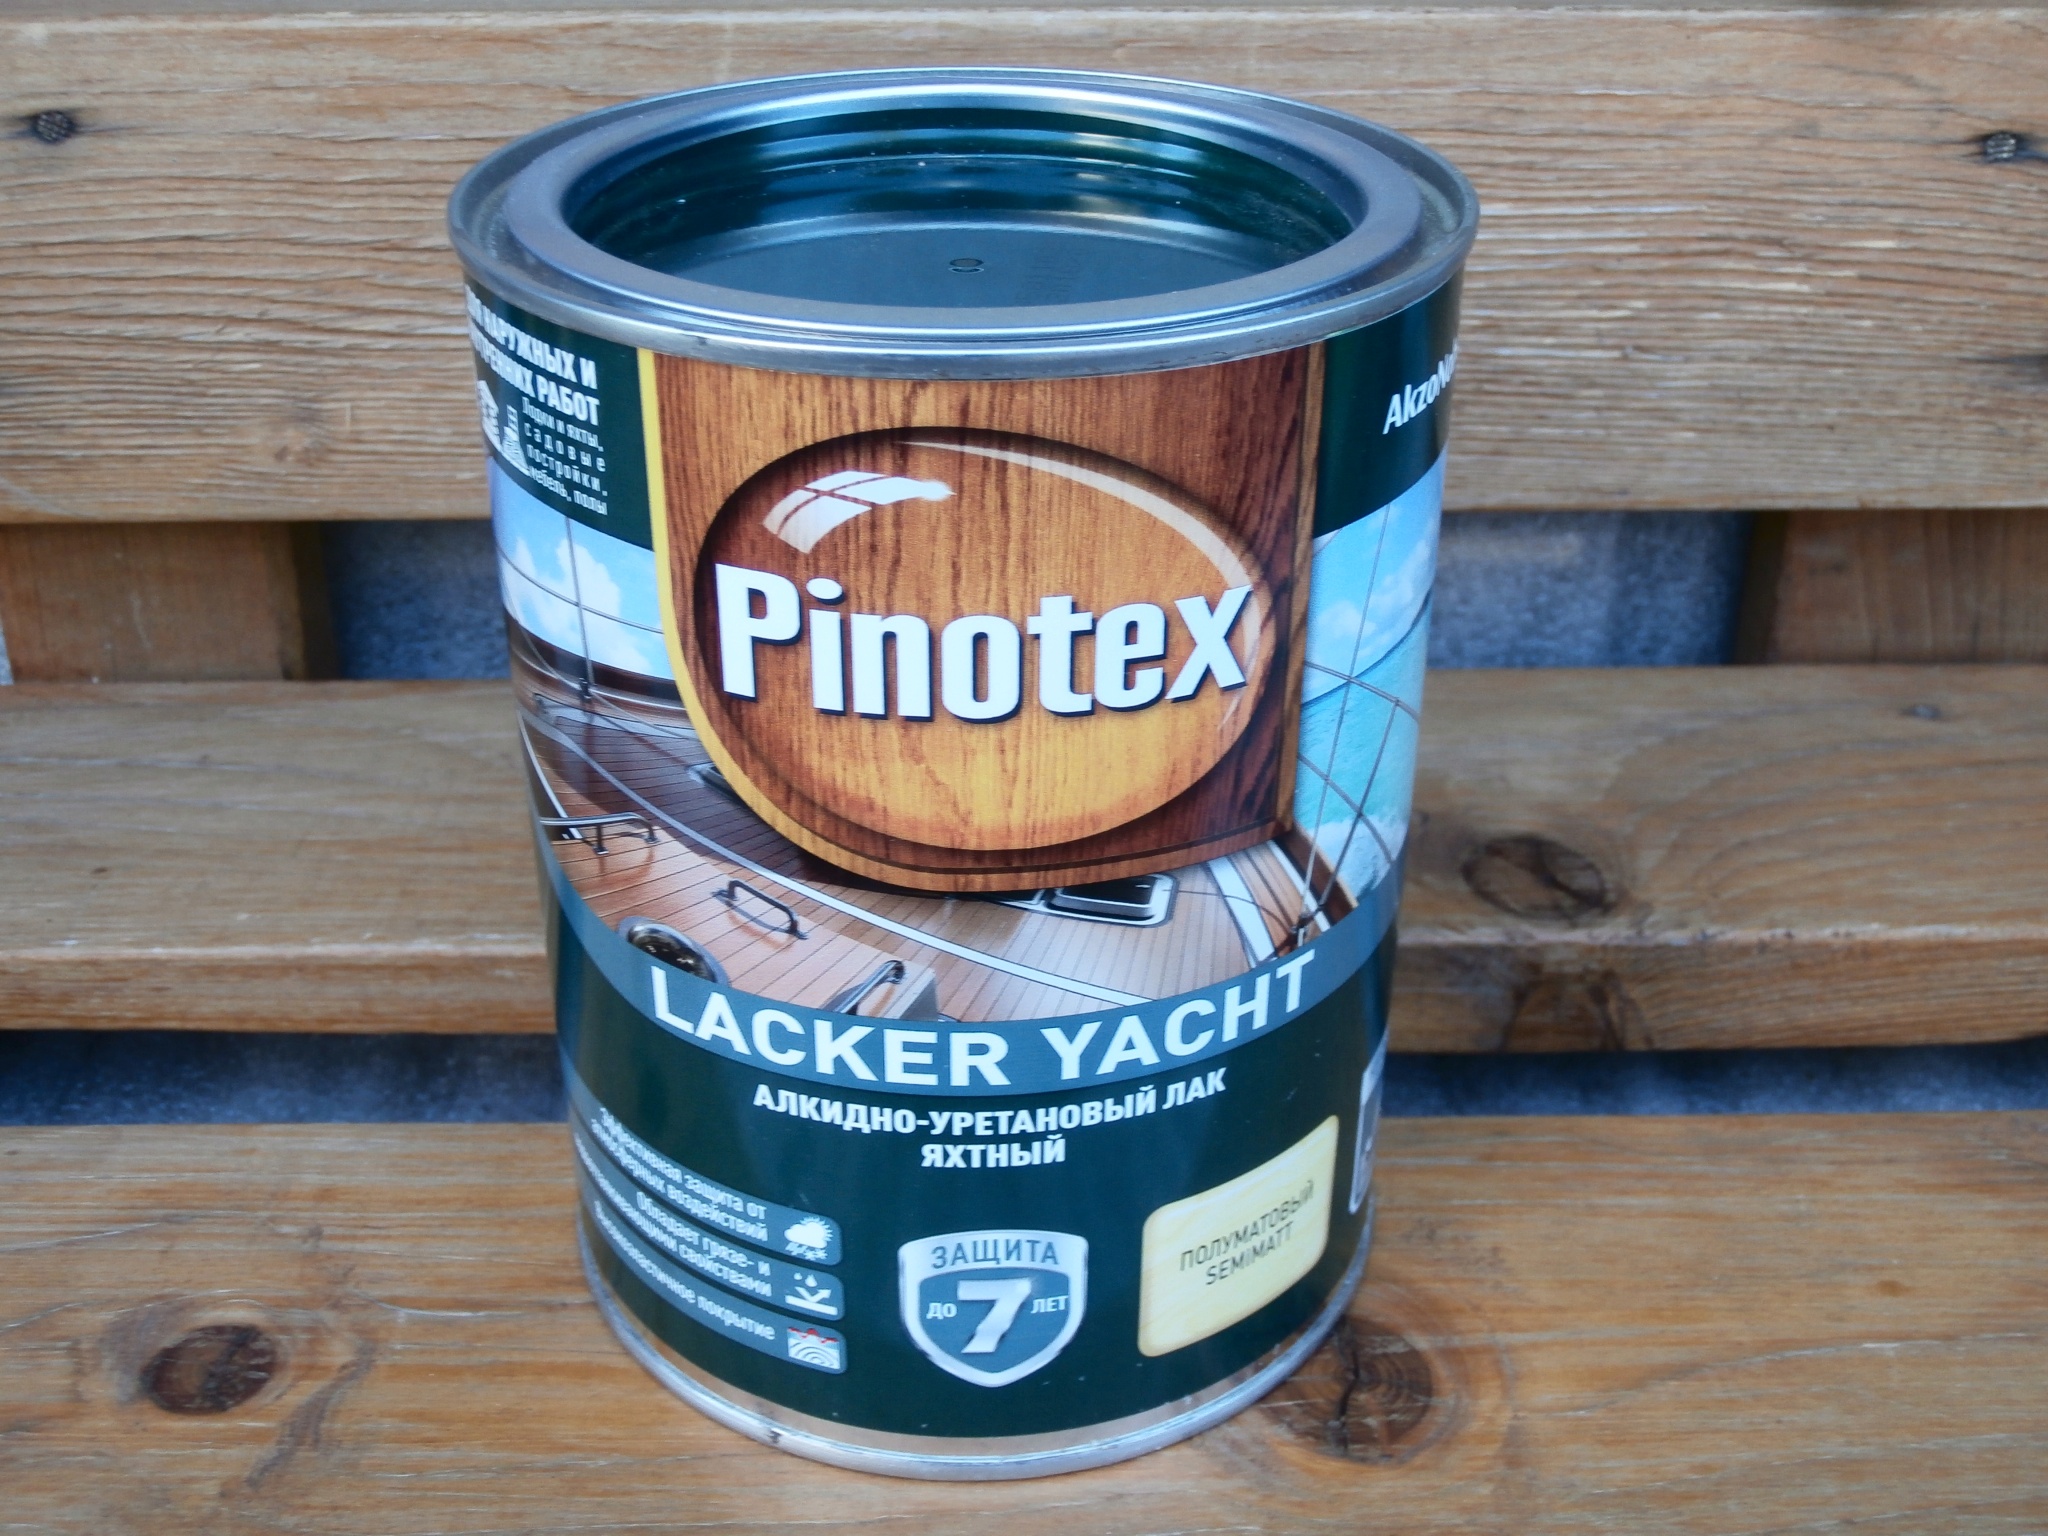 Лак для яхт Pinotex Lacker Yacht полуматовый 2.7 л